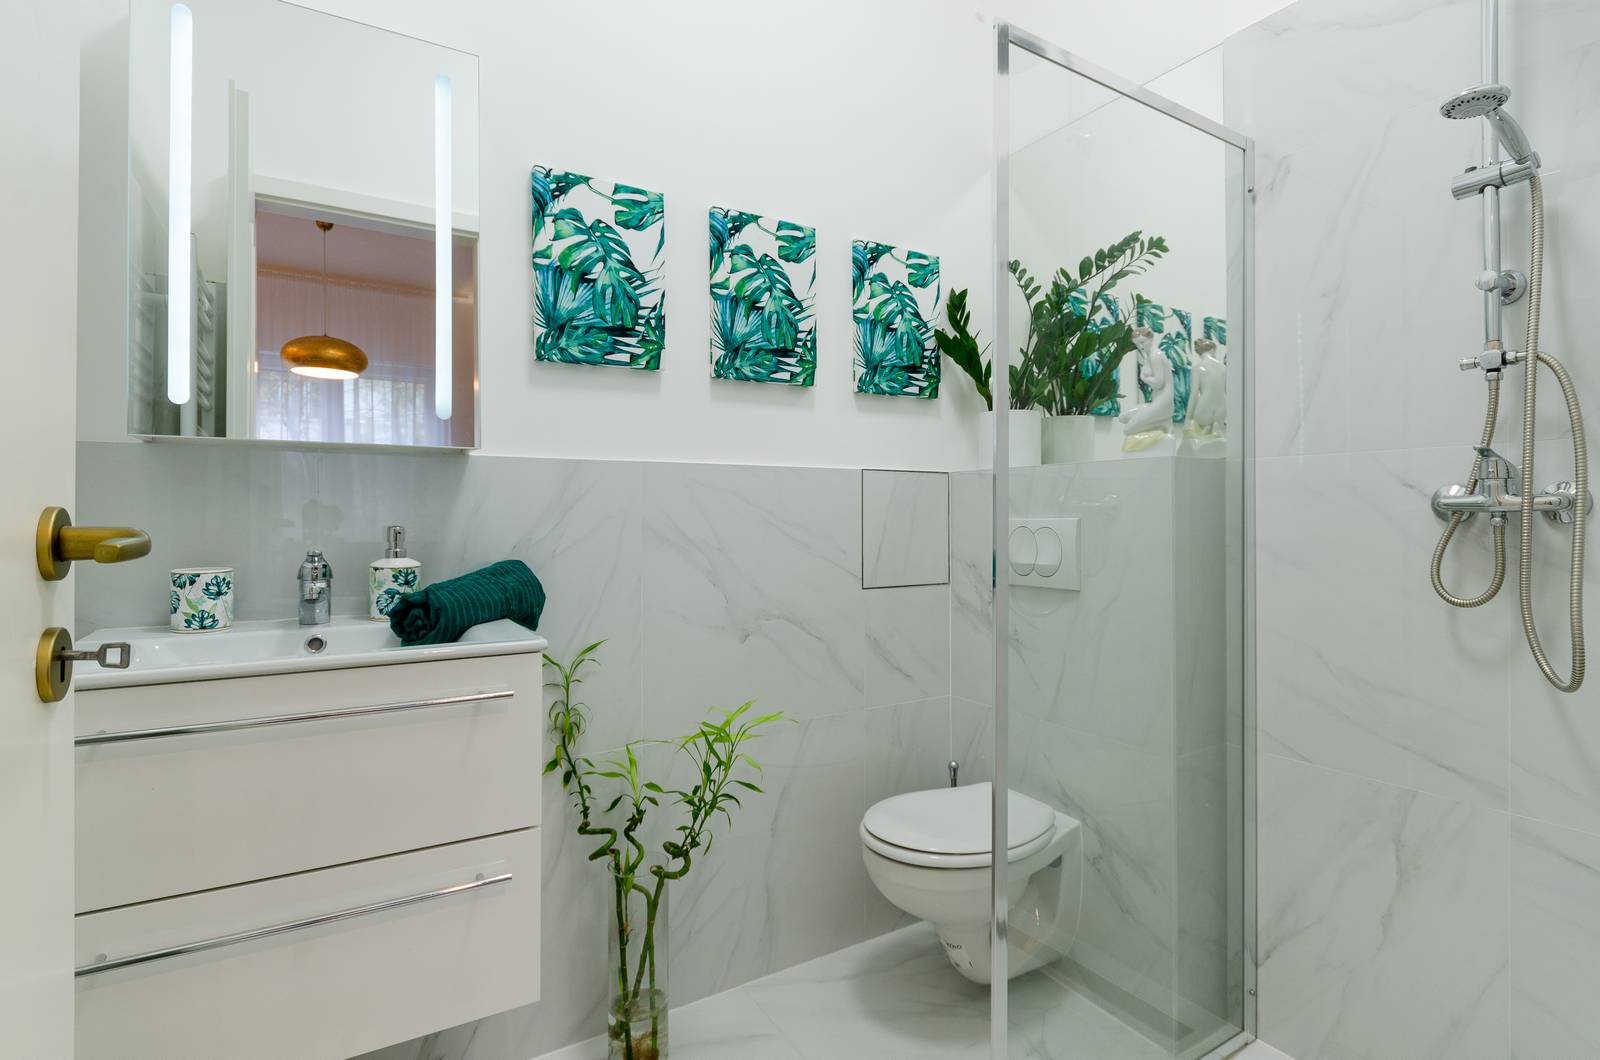 Bồn tắm nằm trước khi cải tạo được thay thế bằng buồng tắm đứng và phân vùng với nhà vệ sinh bằng cửa kính trong suốt nhắm tiết kiệm diện tích cho không gian thông thoáng hơn.